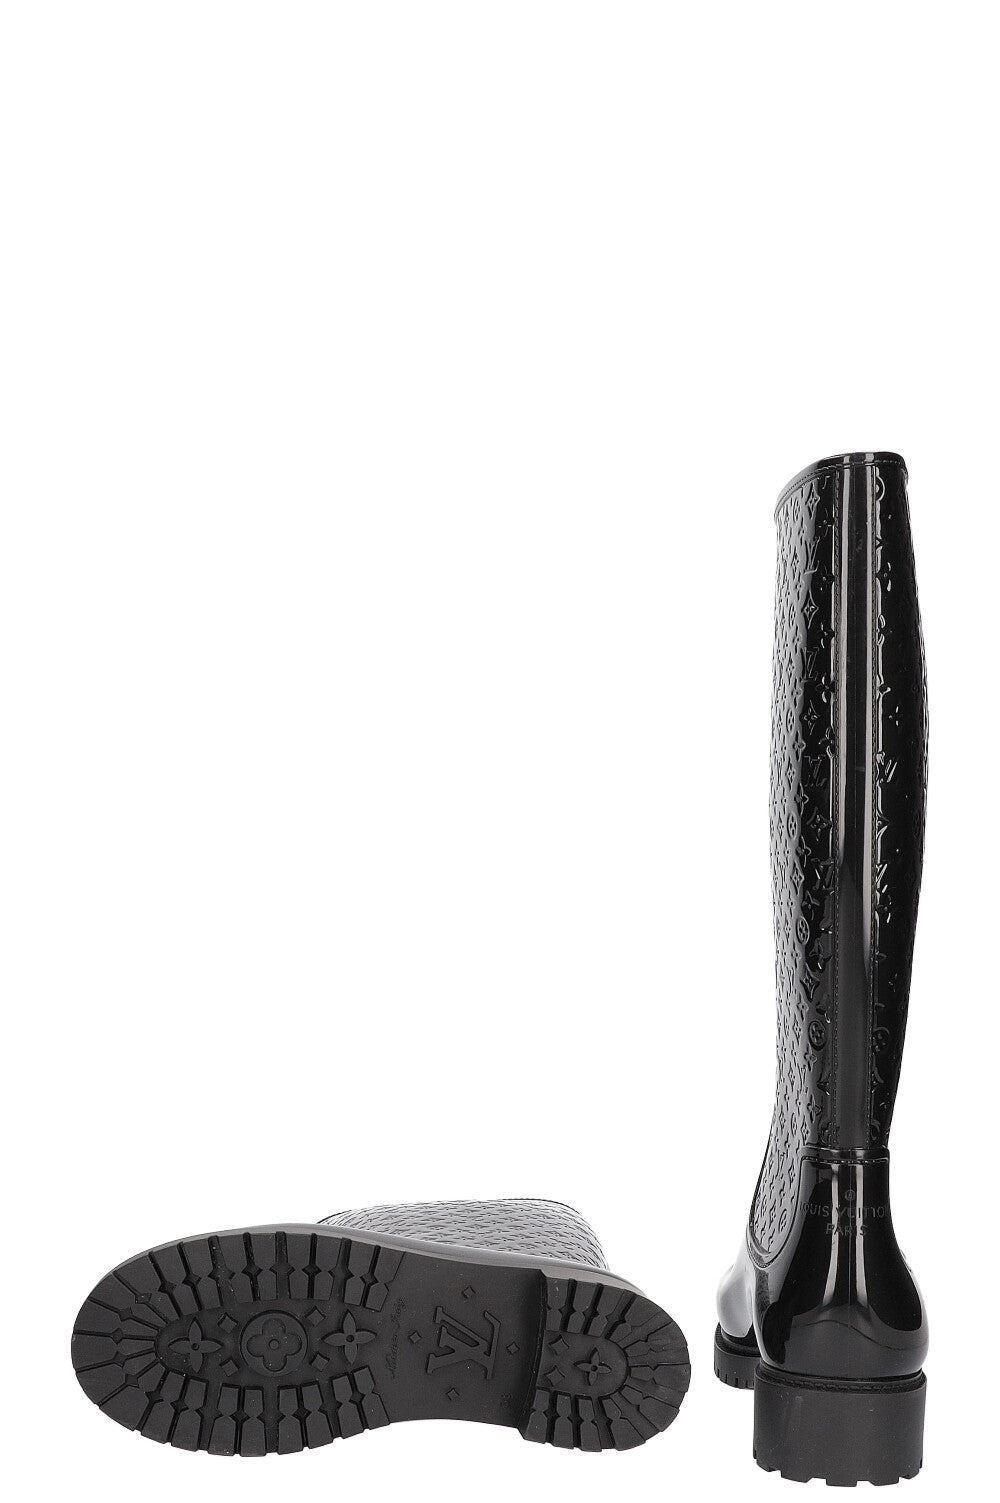 Drops wellington boots Louis Vuitton Black size 37 EU in Rubber - 26778868